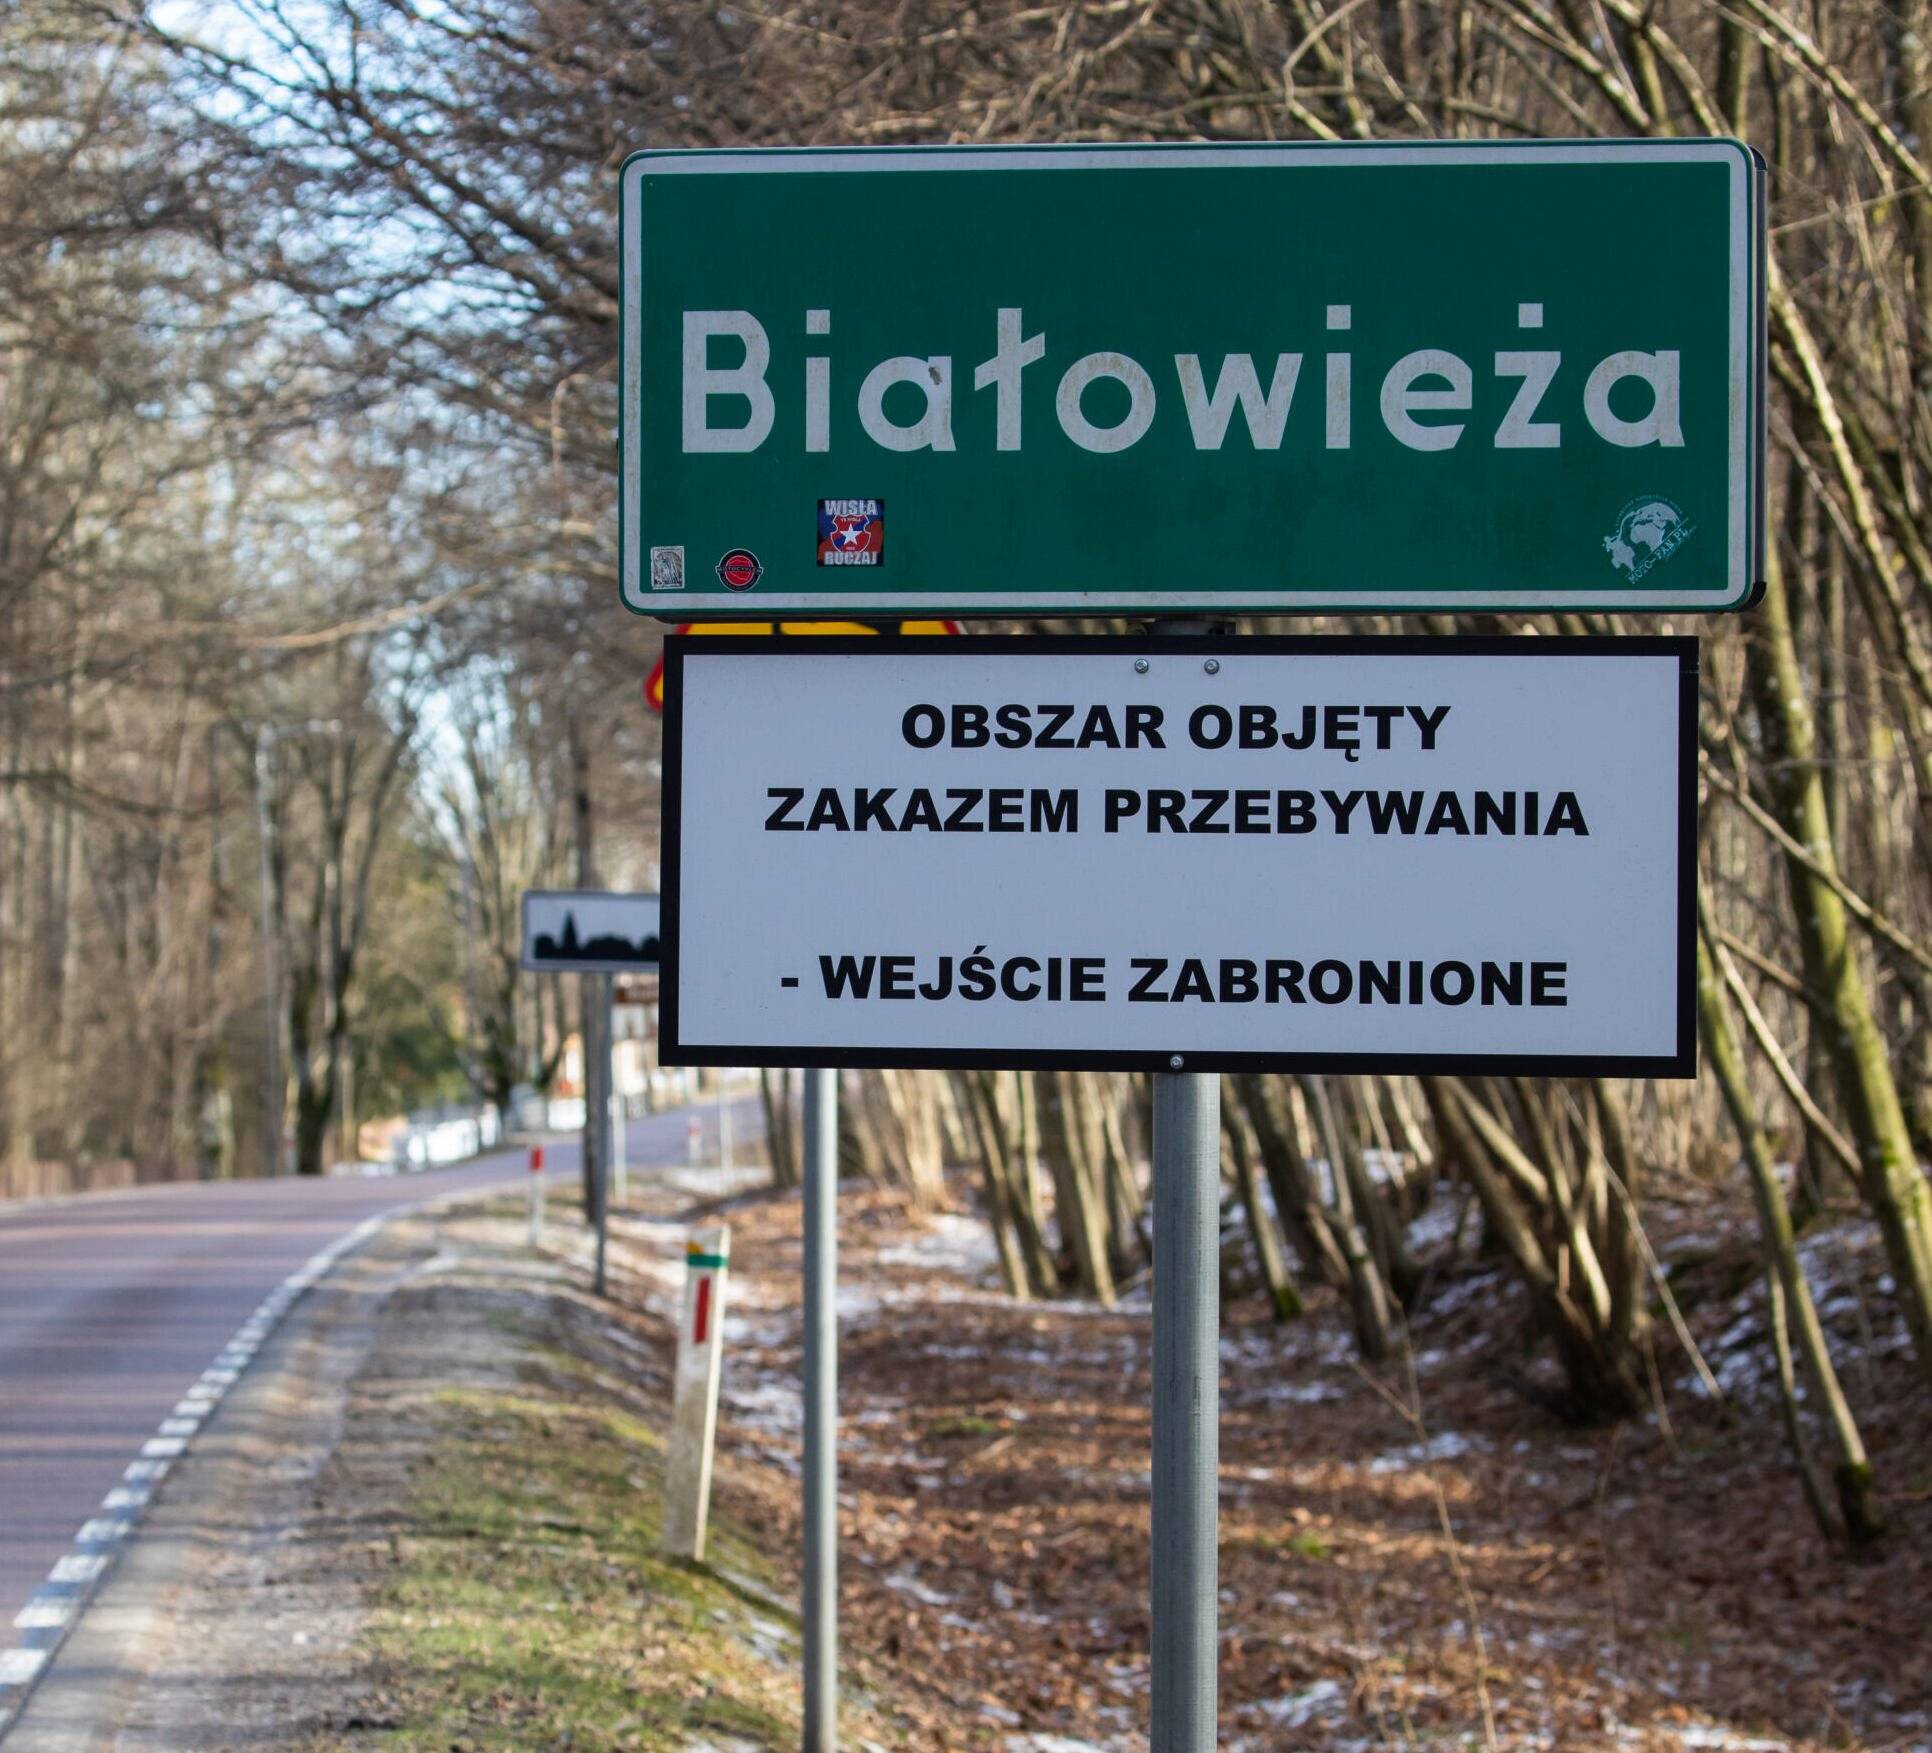 Tablica z napisem "Białowieża, teren objety zakazem przebywania